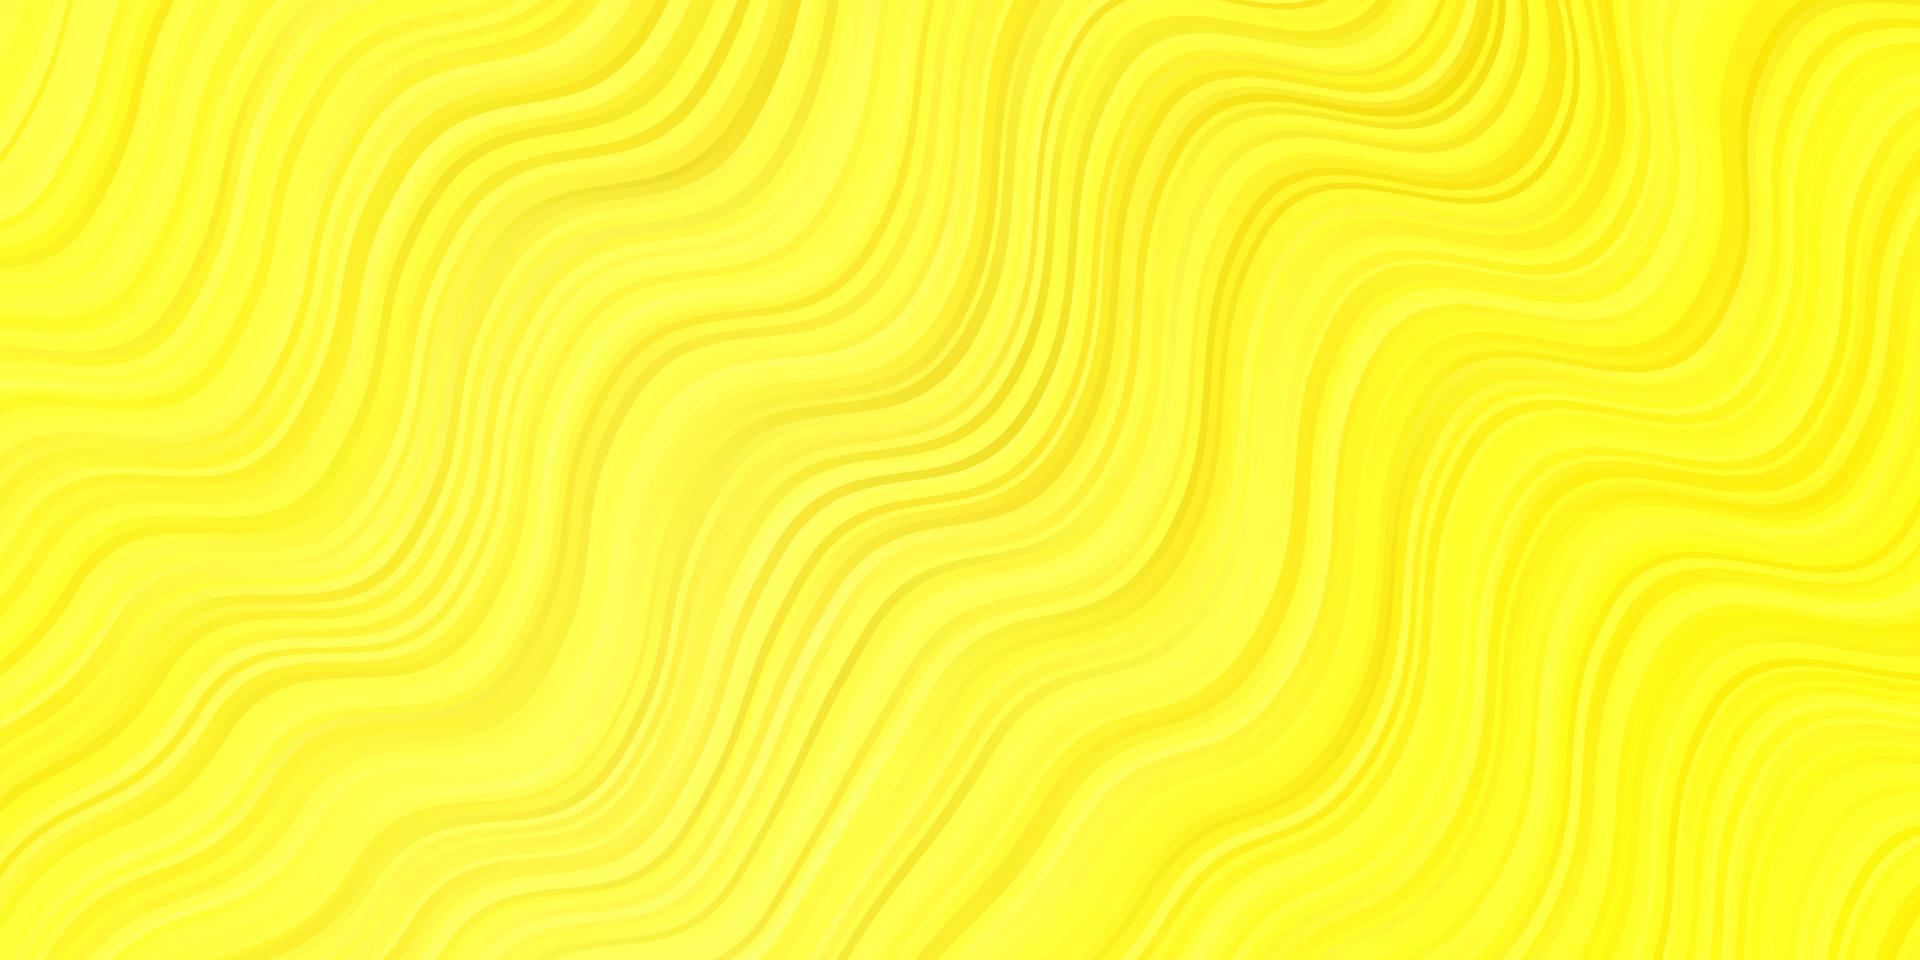 layout vettoriale giallo chiaro con linee ironiche.